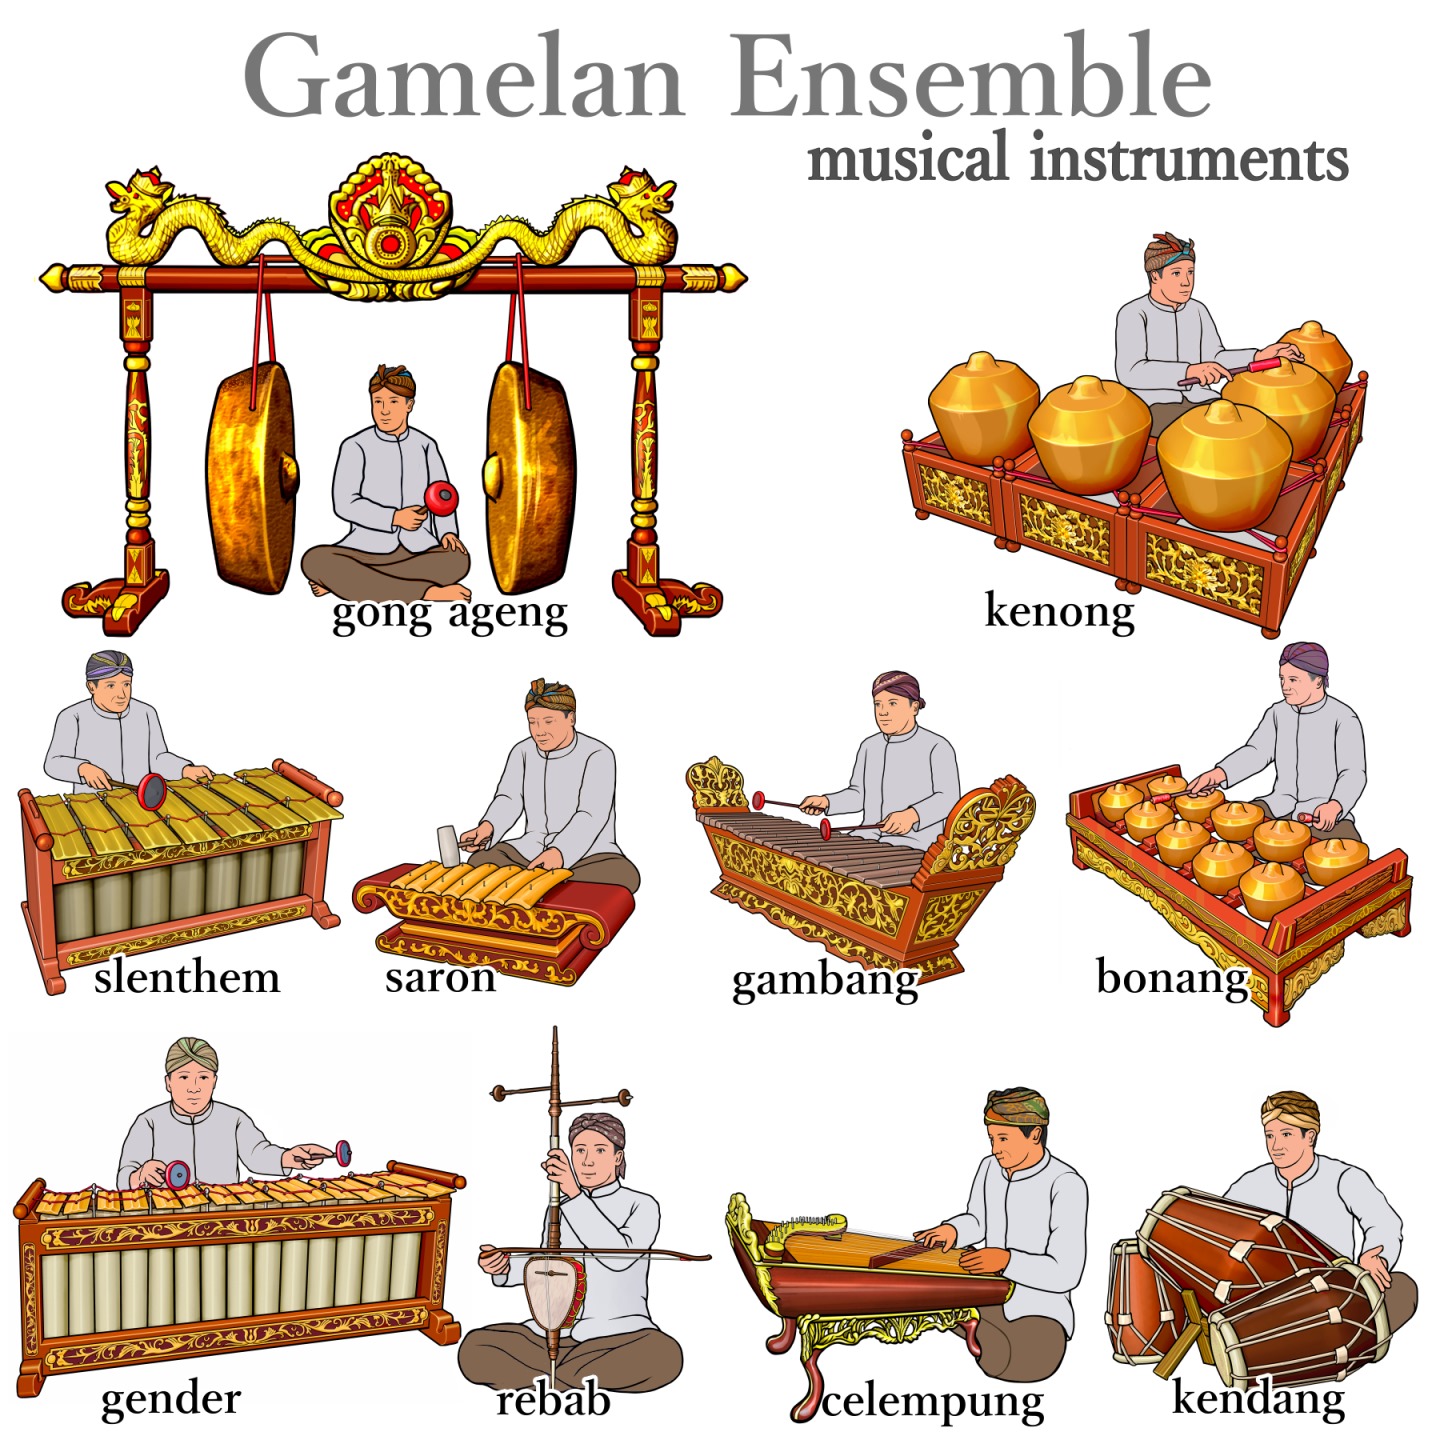 下座音楽で使われている楽器 instruments used in Geza music